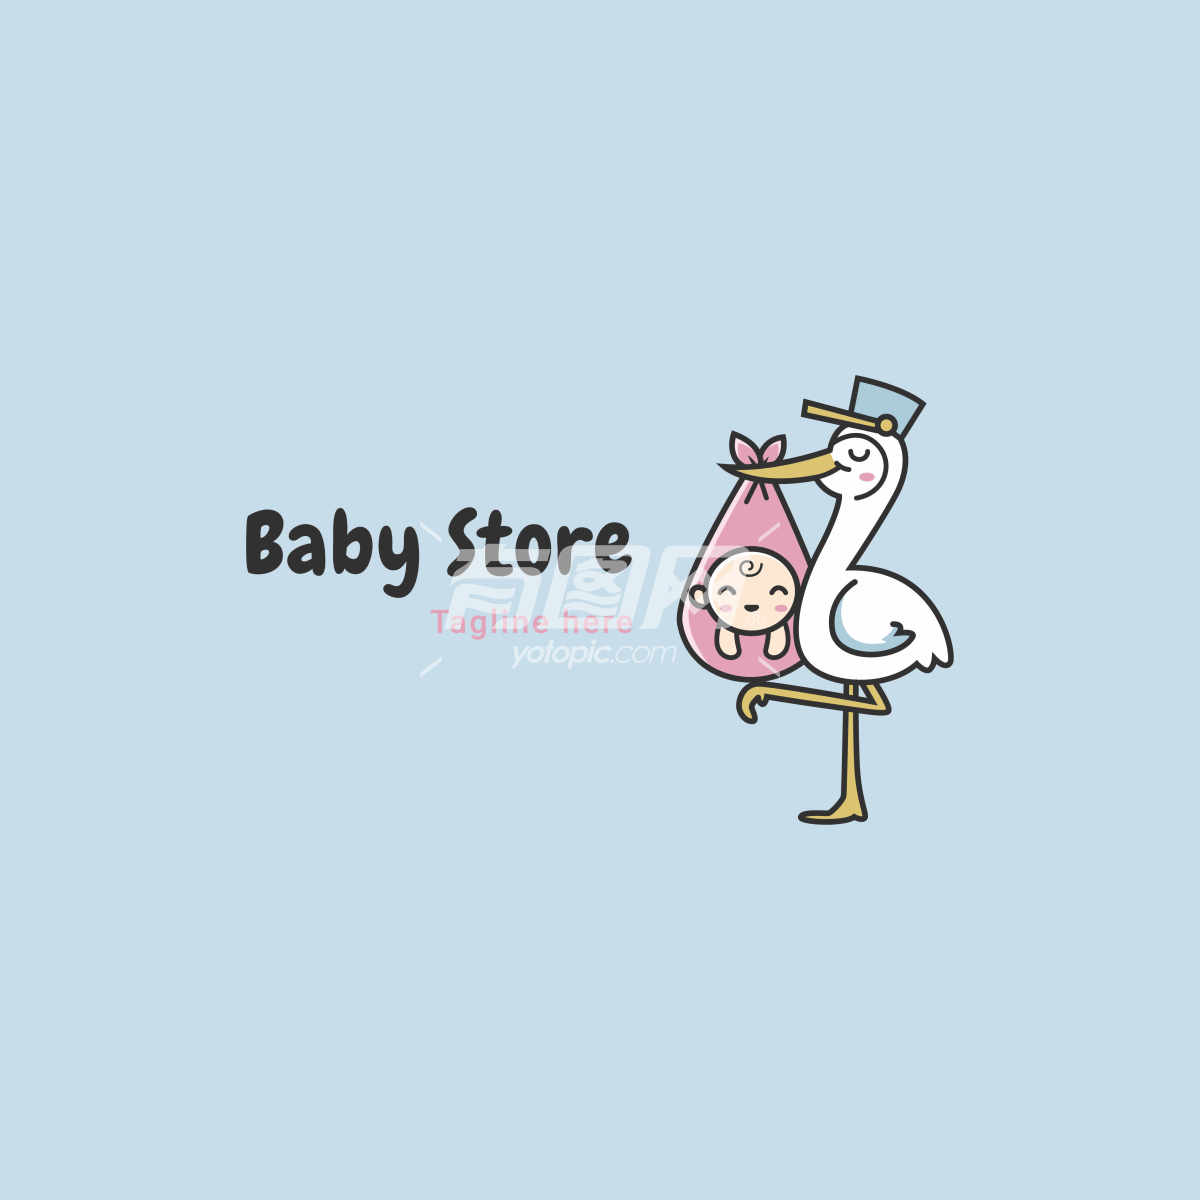 婴儿用品店的logo设计